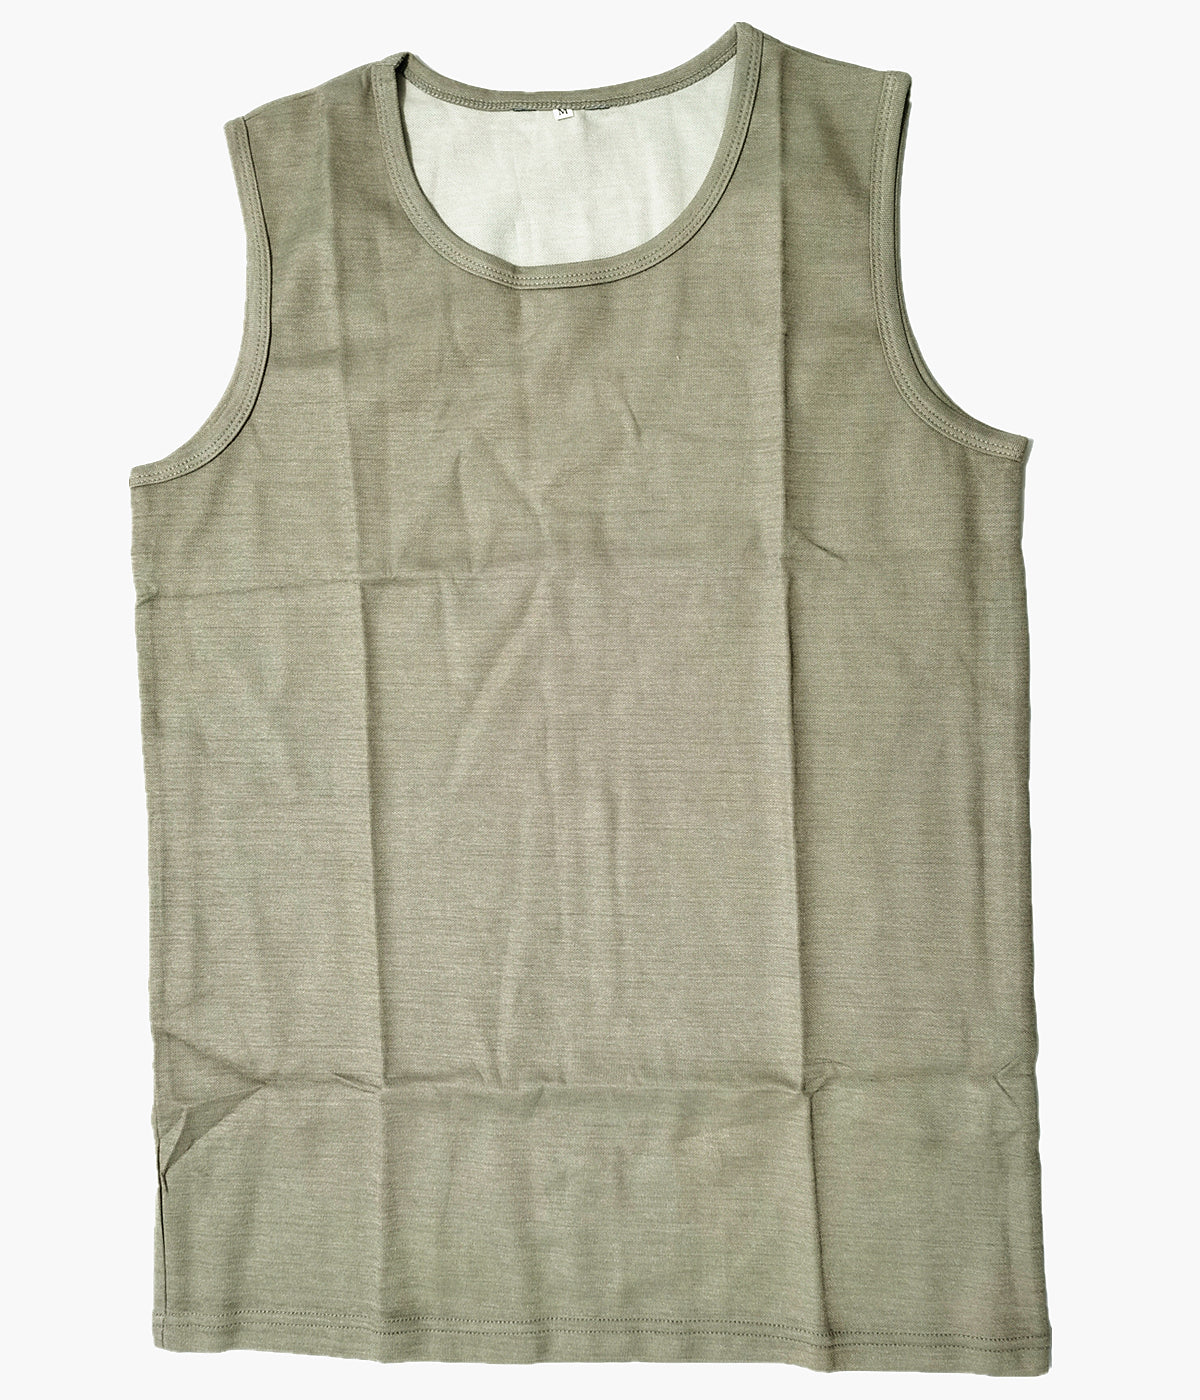 Unisex Vest EMF Shielding Sleeveless Anti-Radiation EMI Protection Clothes Tank T-Shirt